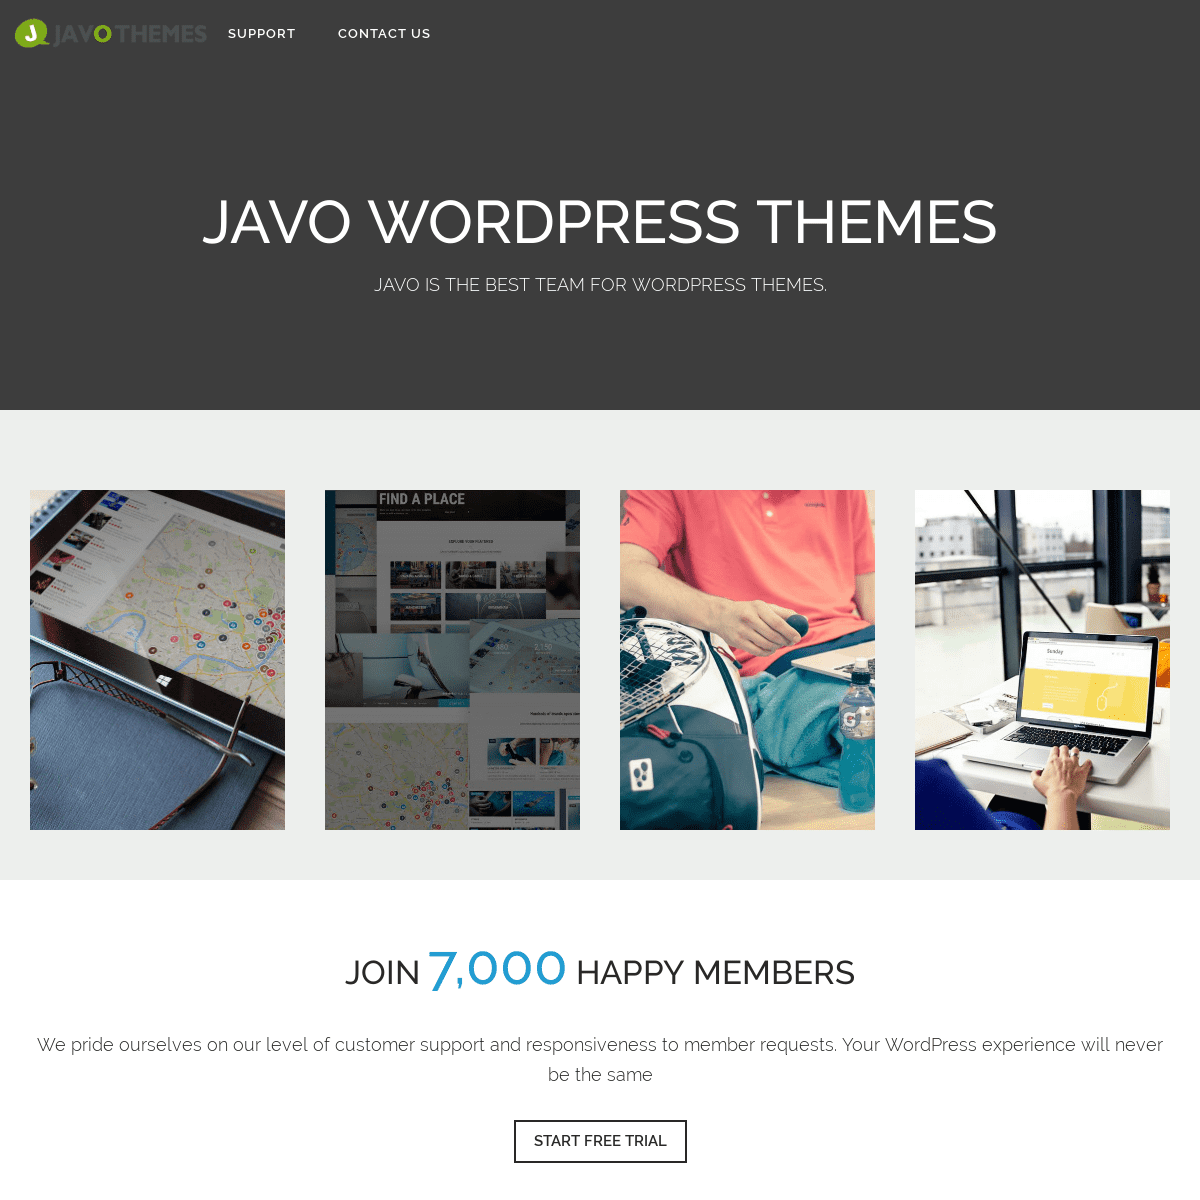 Best WordPress Team Javo Themes – Javo WordPress Themes are Here